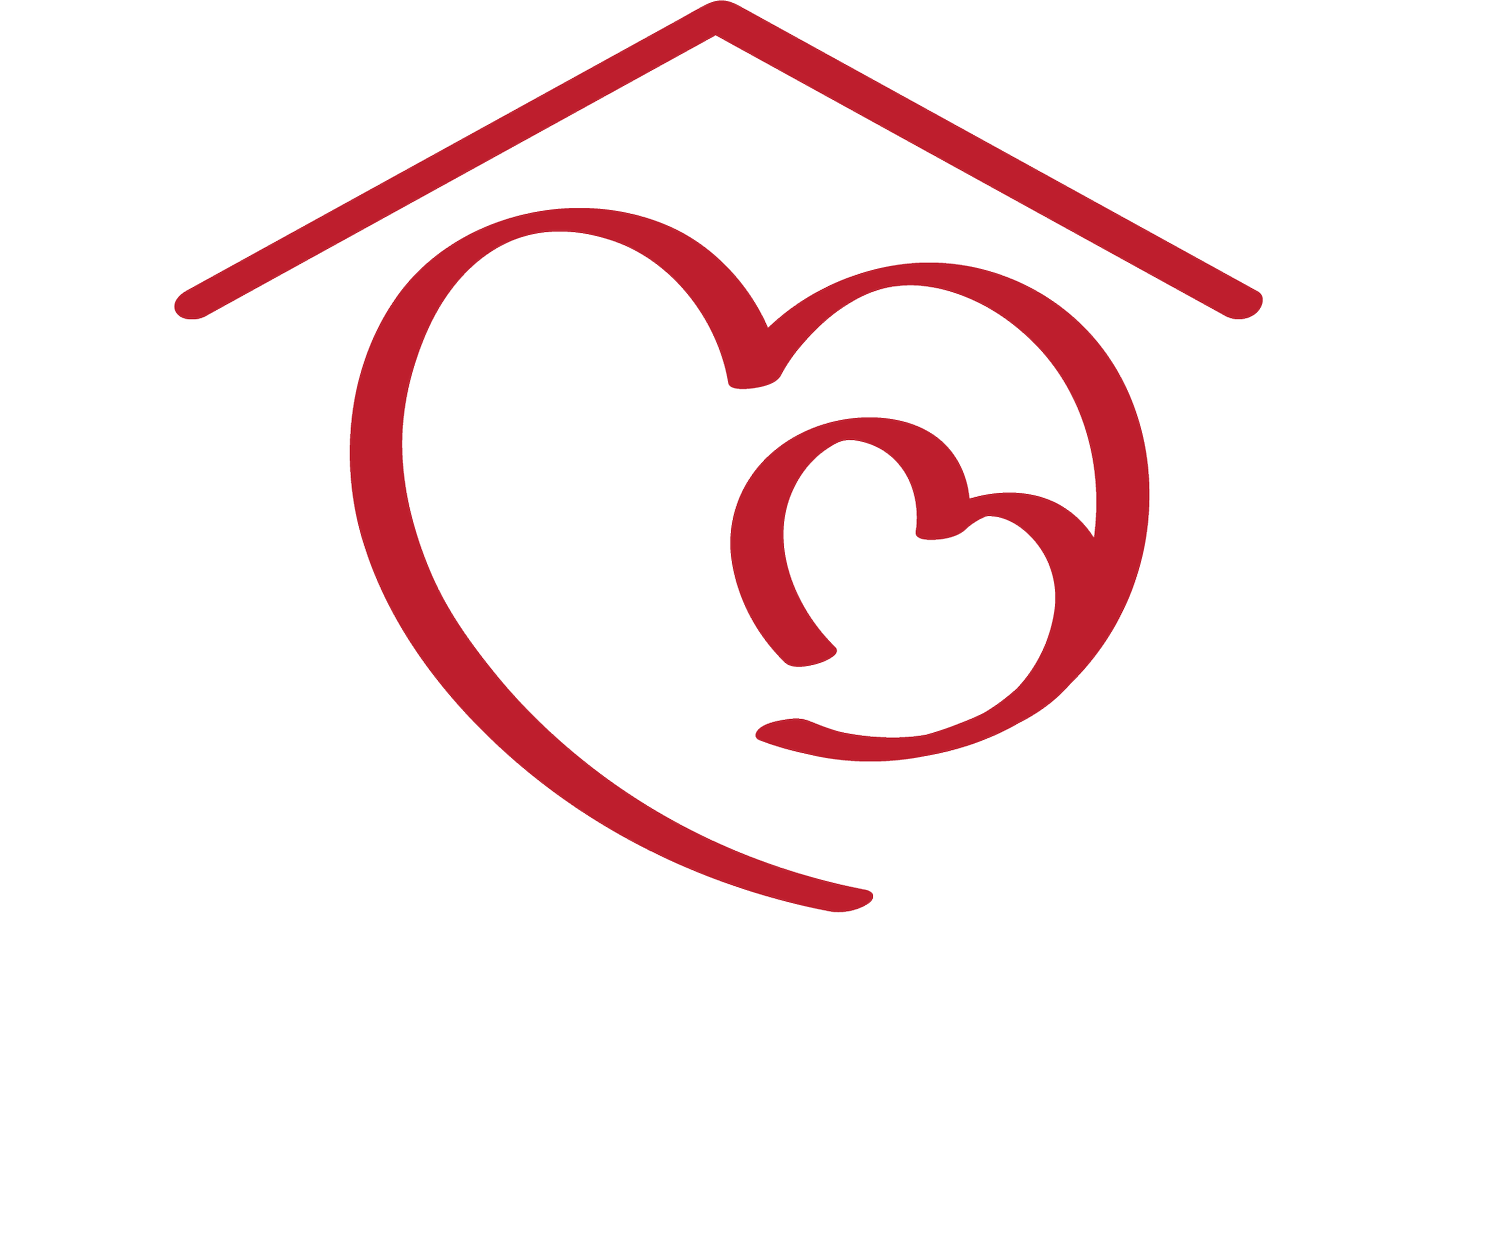 Precious Life Shelter